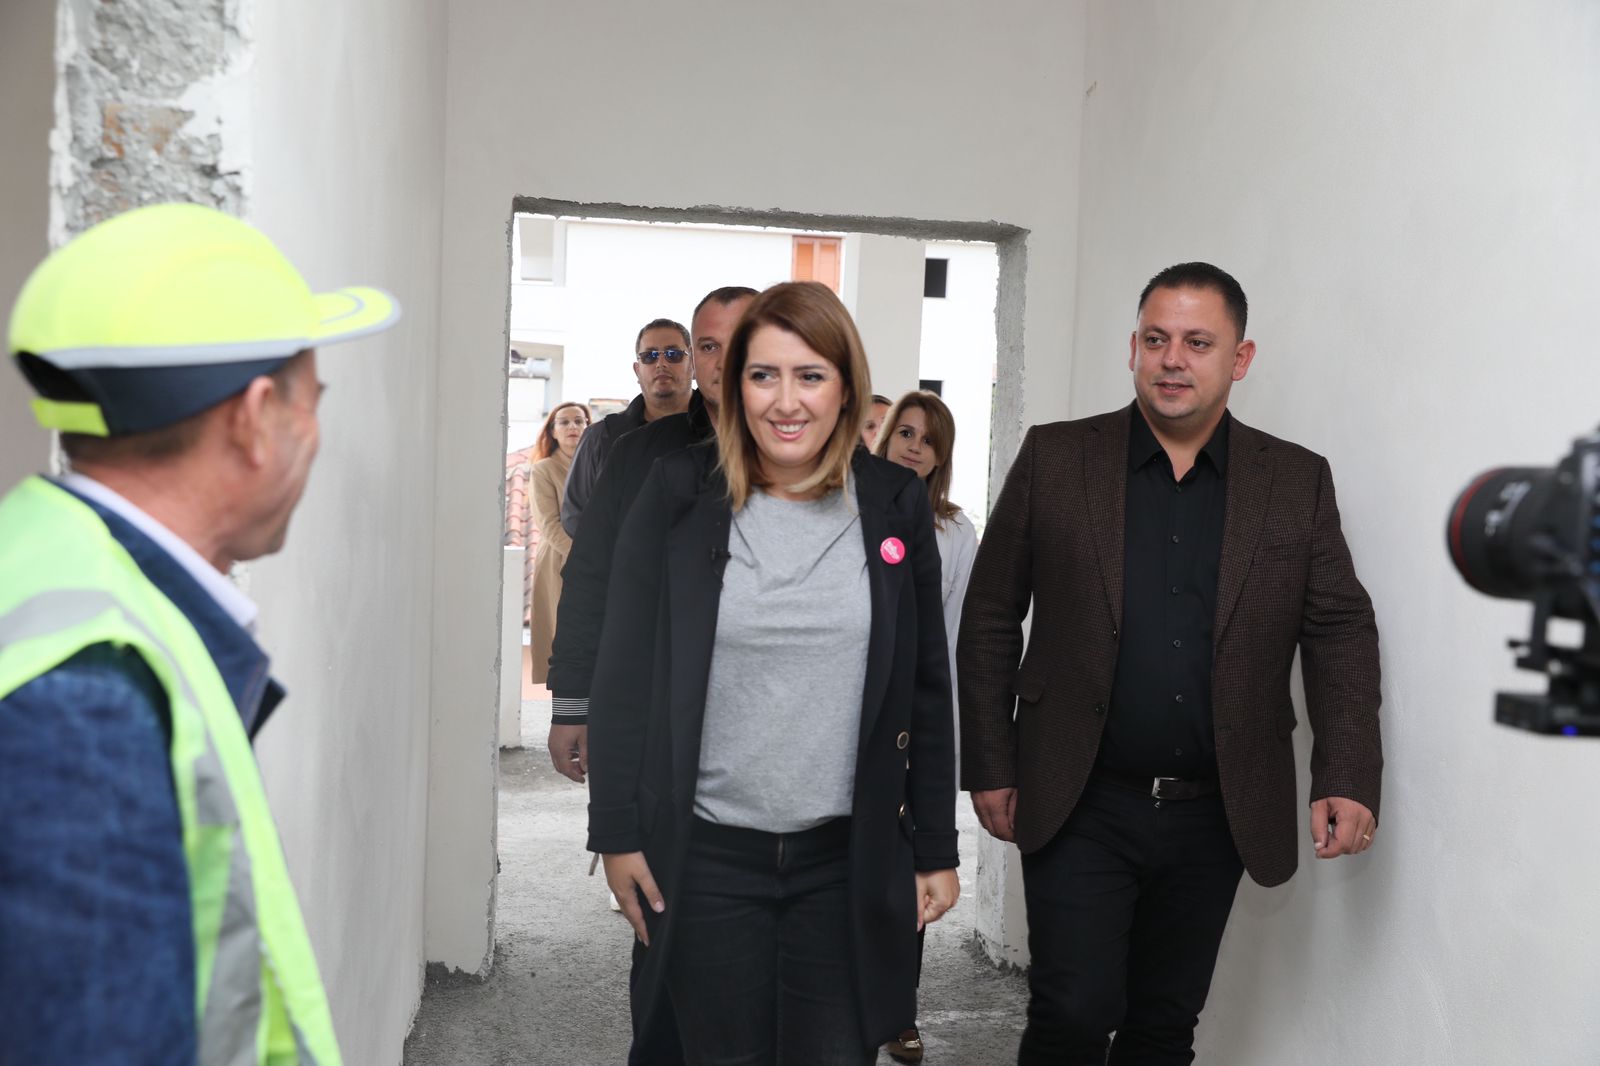 Manastirliu inspekton punimet në qendrën shëndetësore Luz i Vogël: Viti 2023 sërish do të çelë një kantier tjetër punimesh